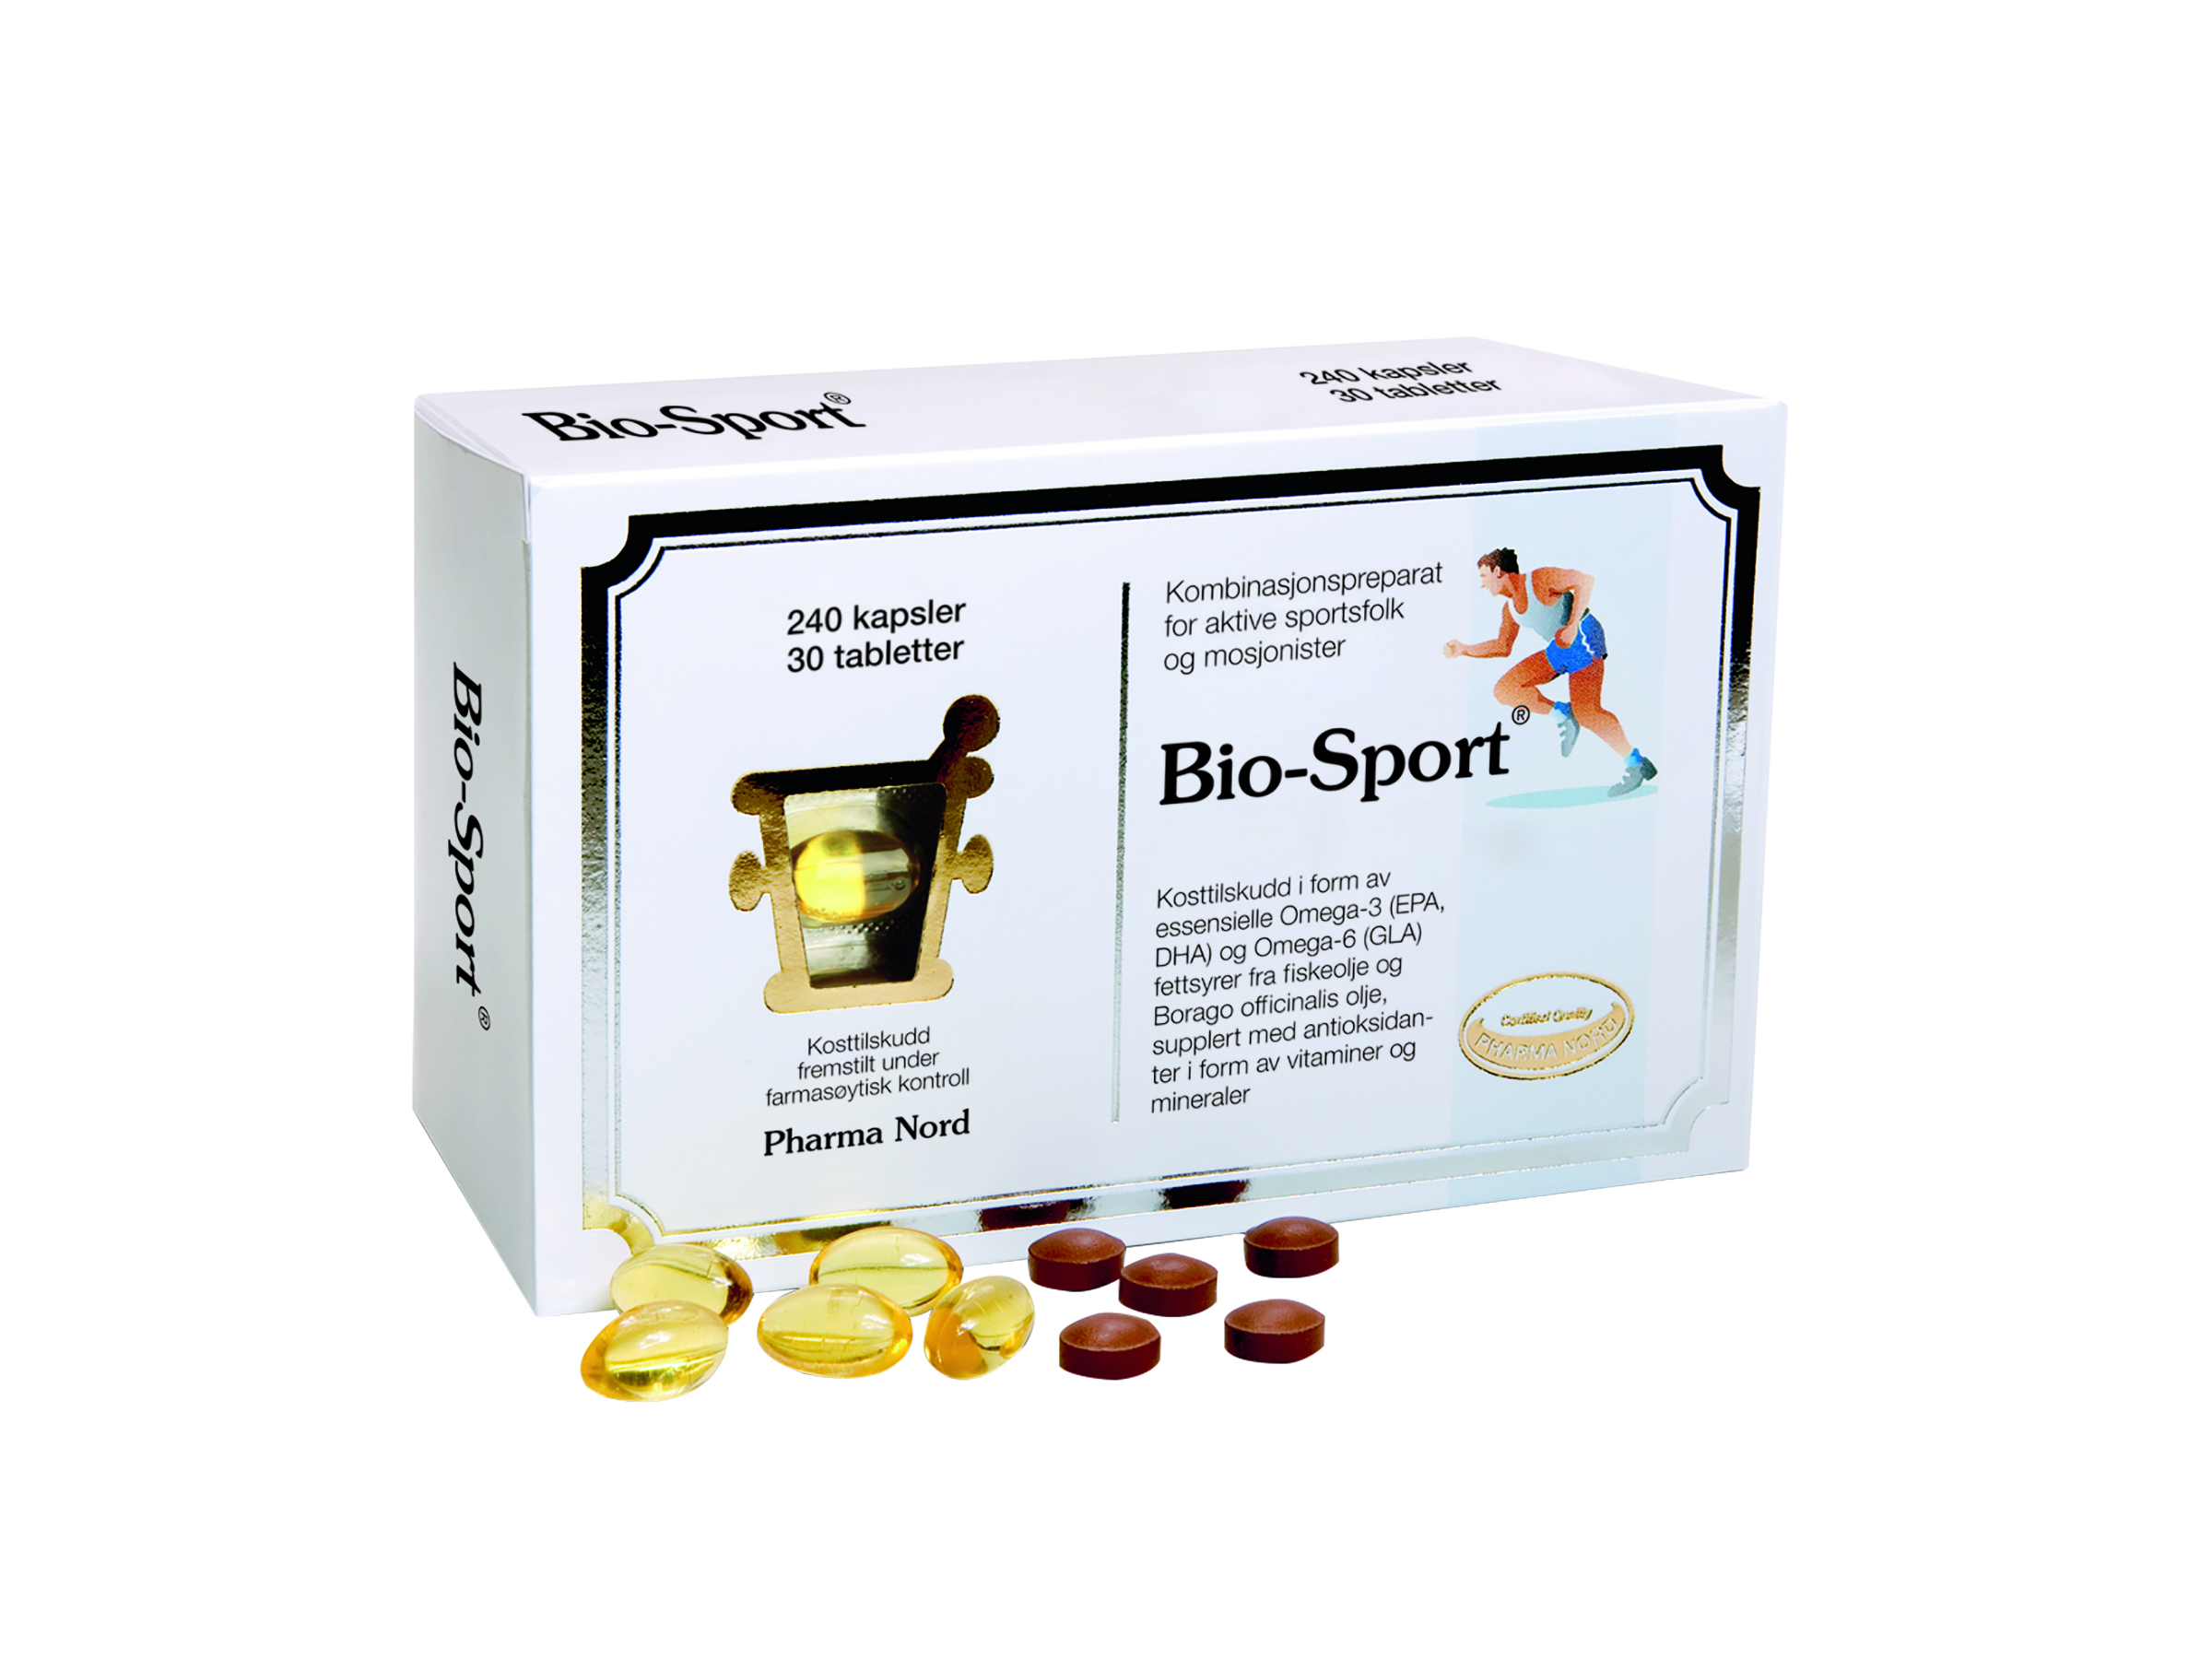 Bio-sport, 240 kapsler +30 tabletter